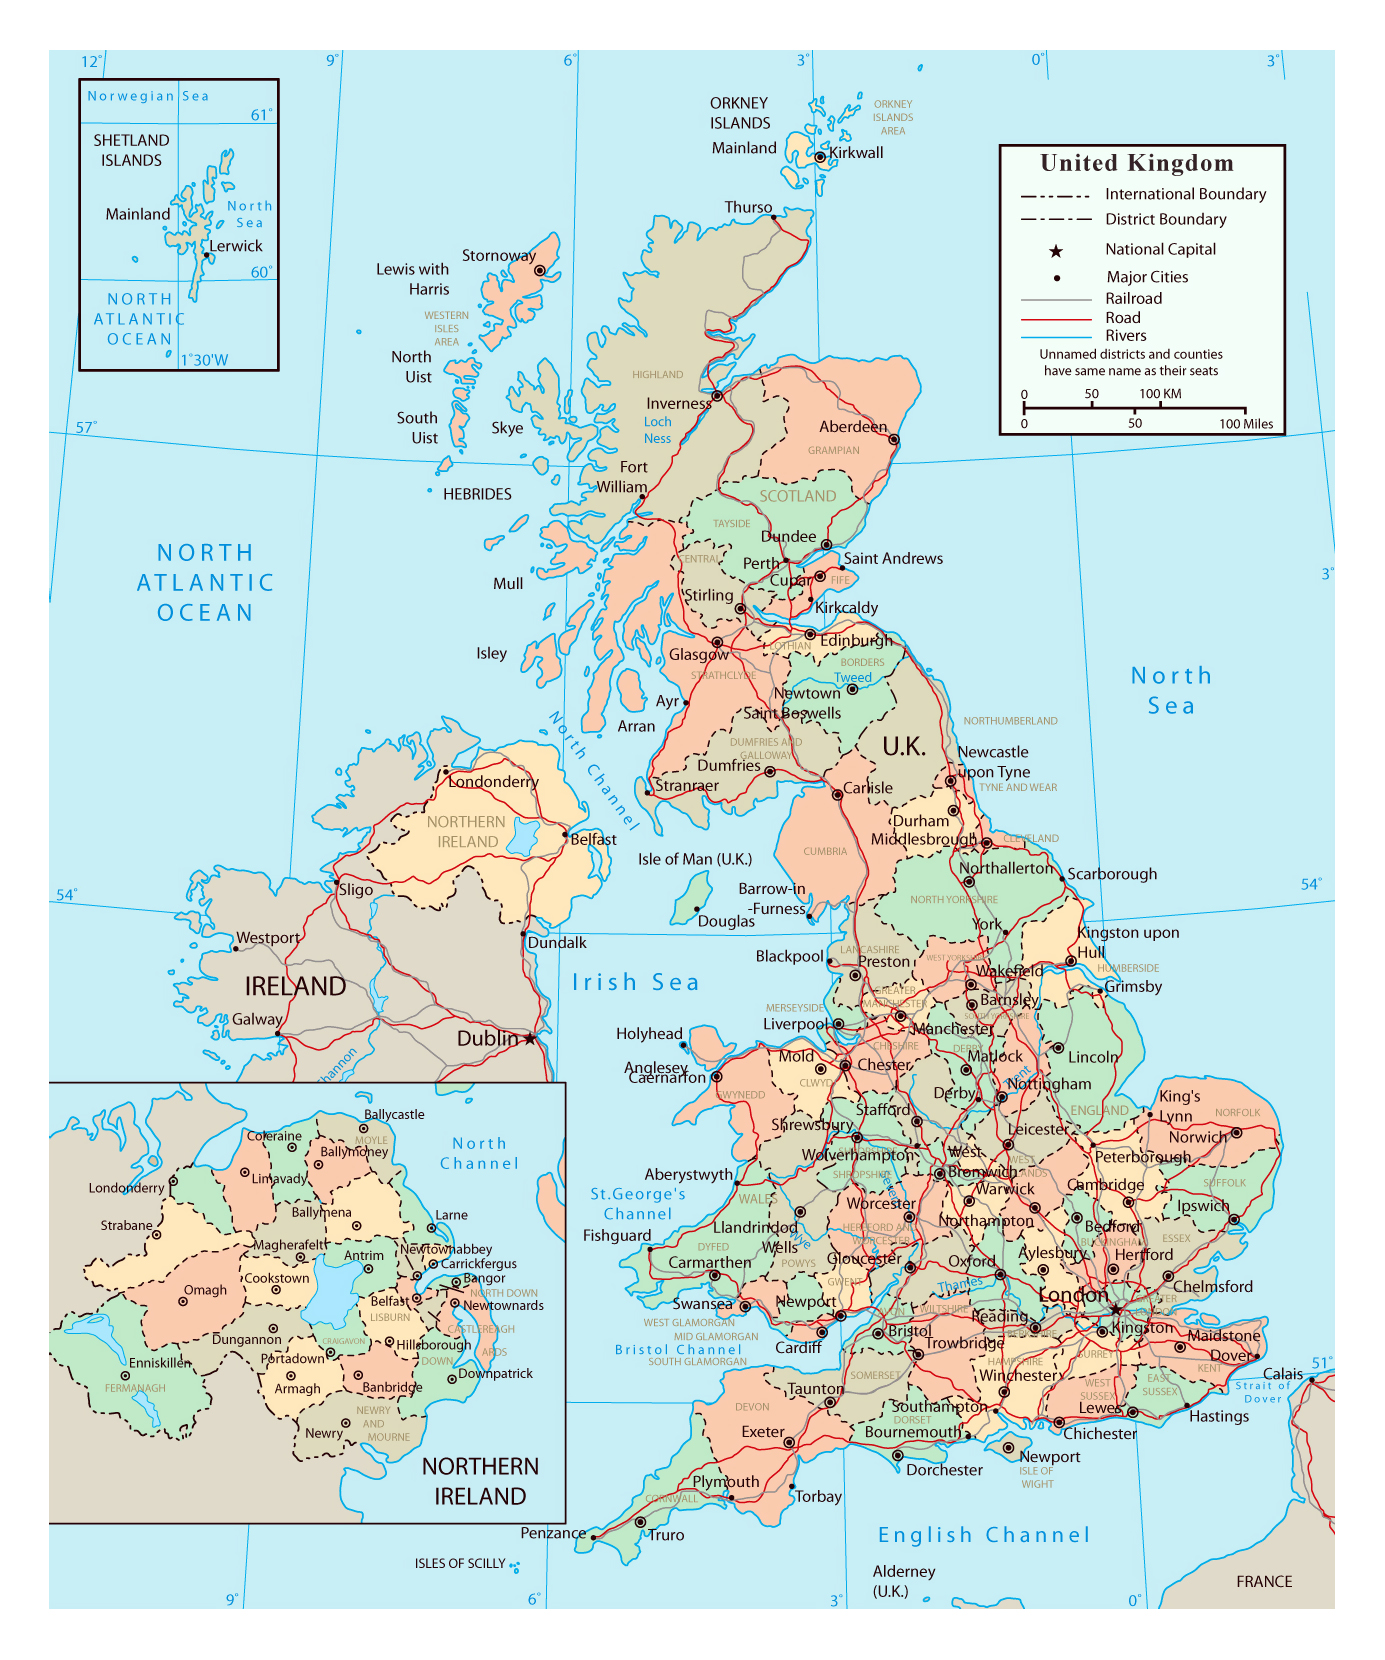 Grande mapa político y administrativo del Reino Unido con carreteras